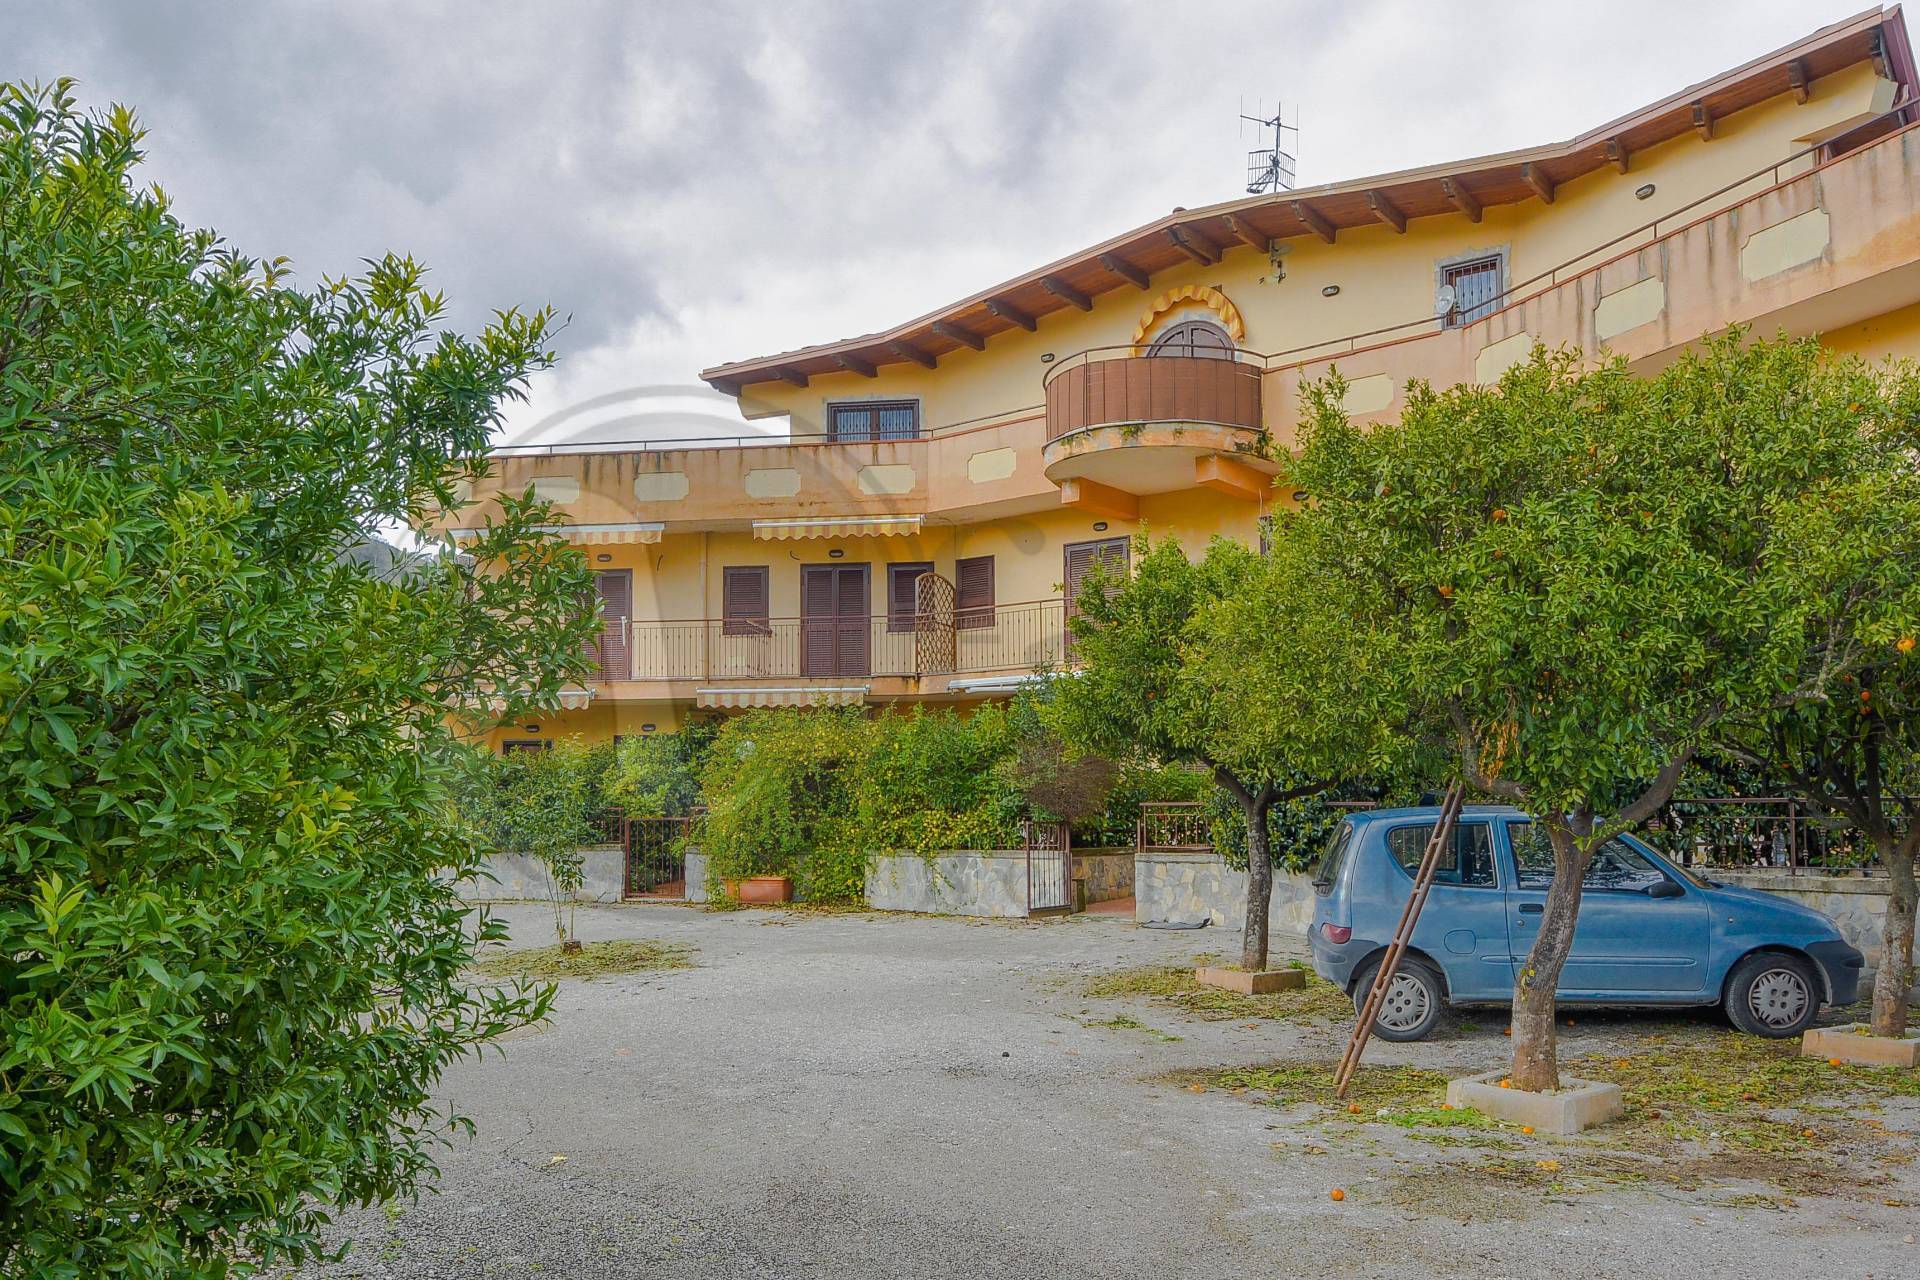 Appartamento in vendita a Laureana Cilento, 3 locali, prezzo € 120.000 | PortaleAgenzieImmobiliari.it